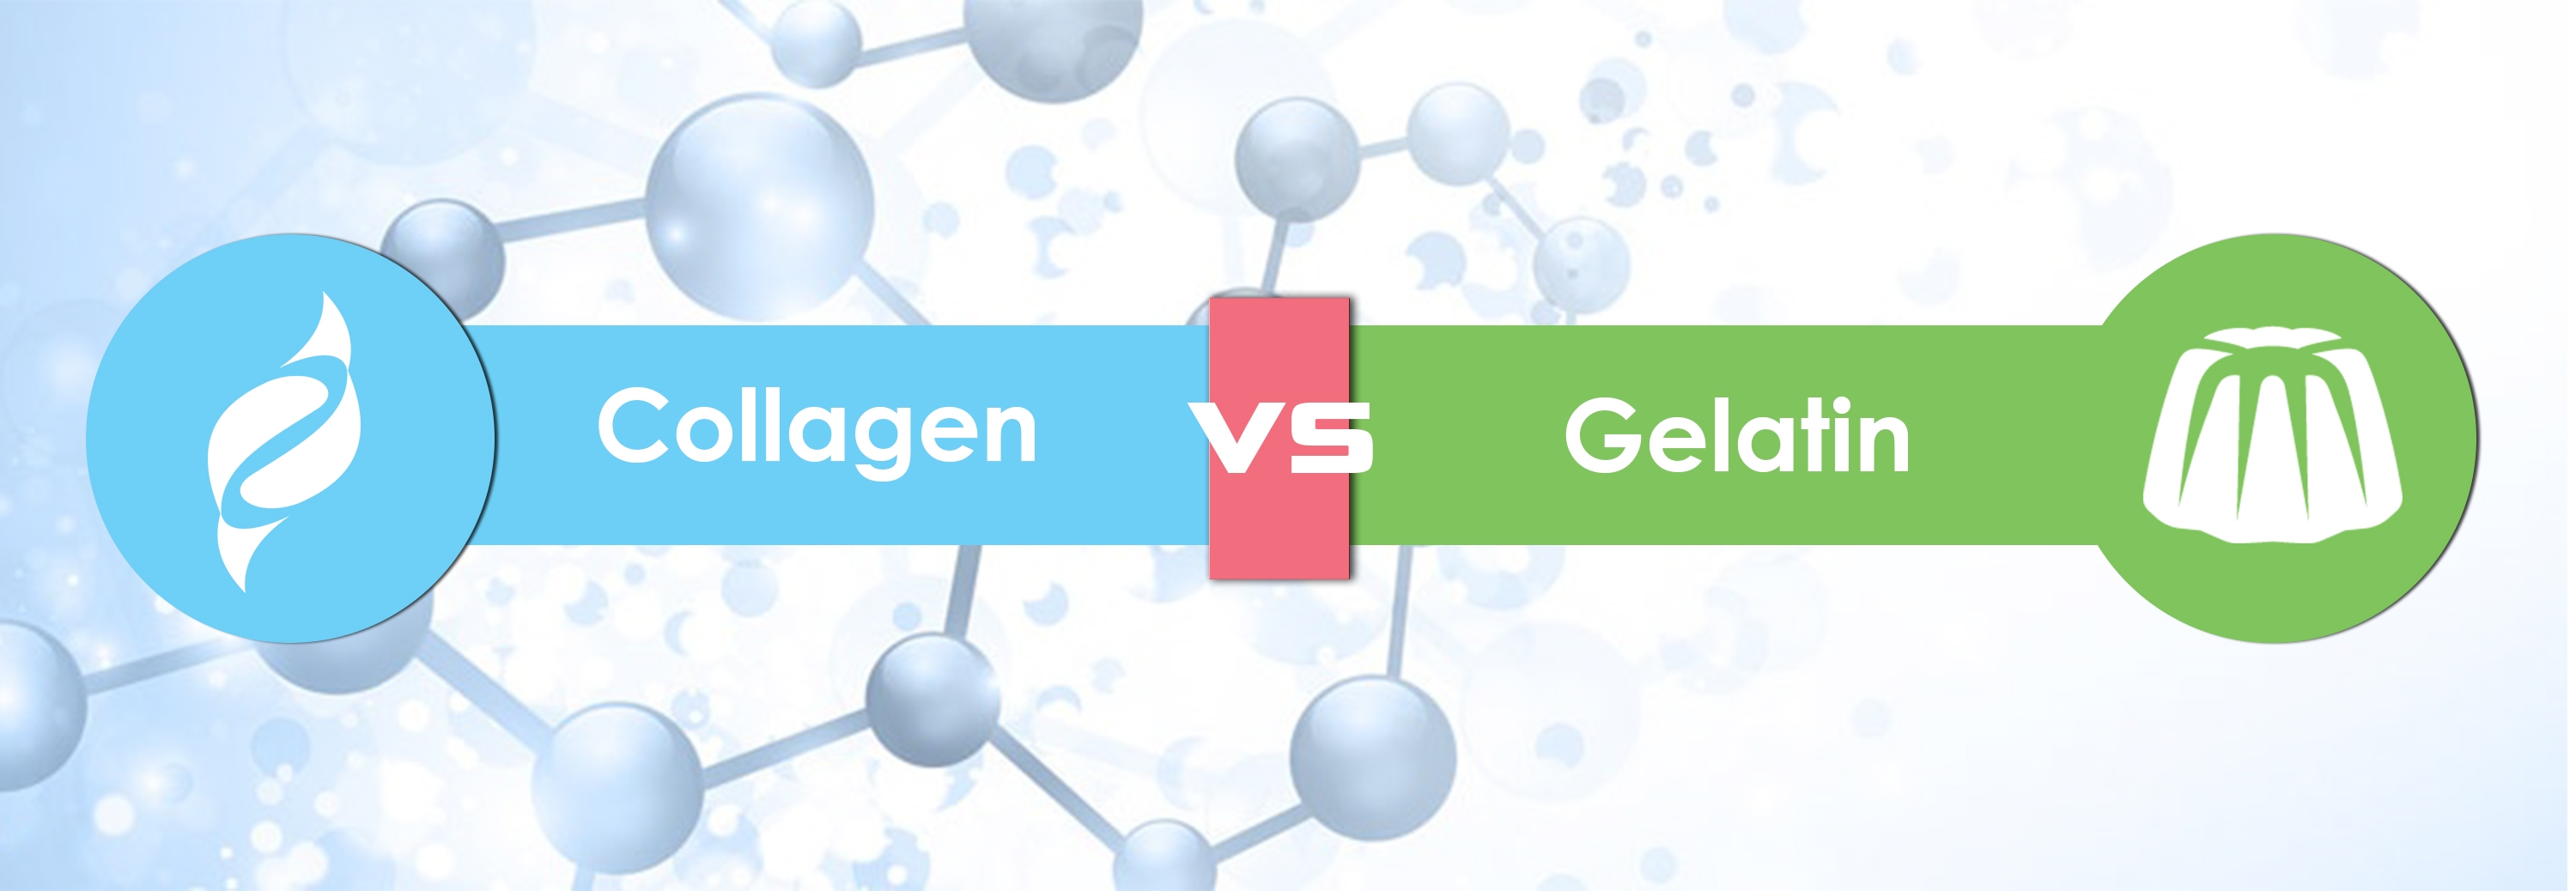 collagen vs gelatin supplement